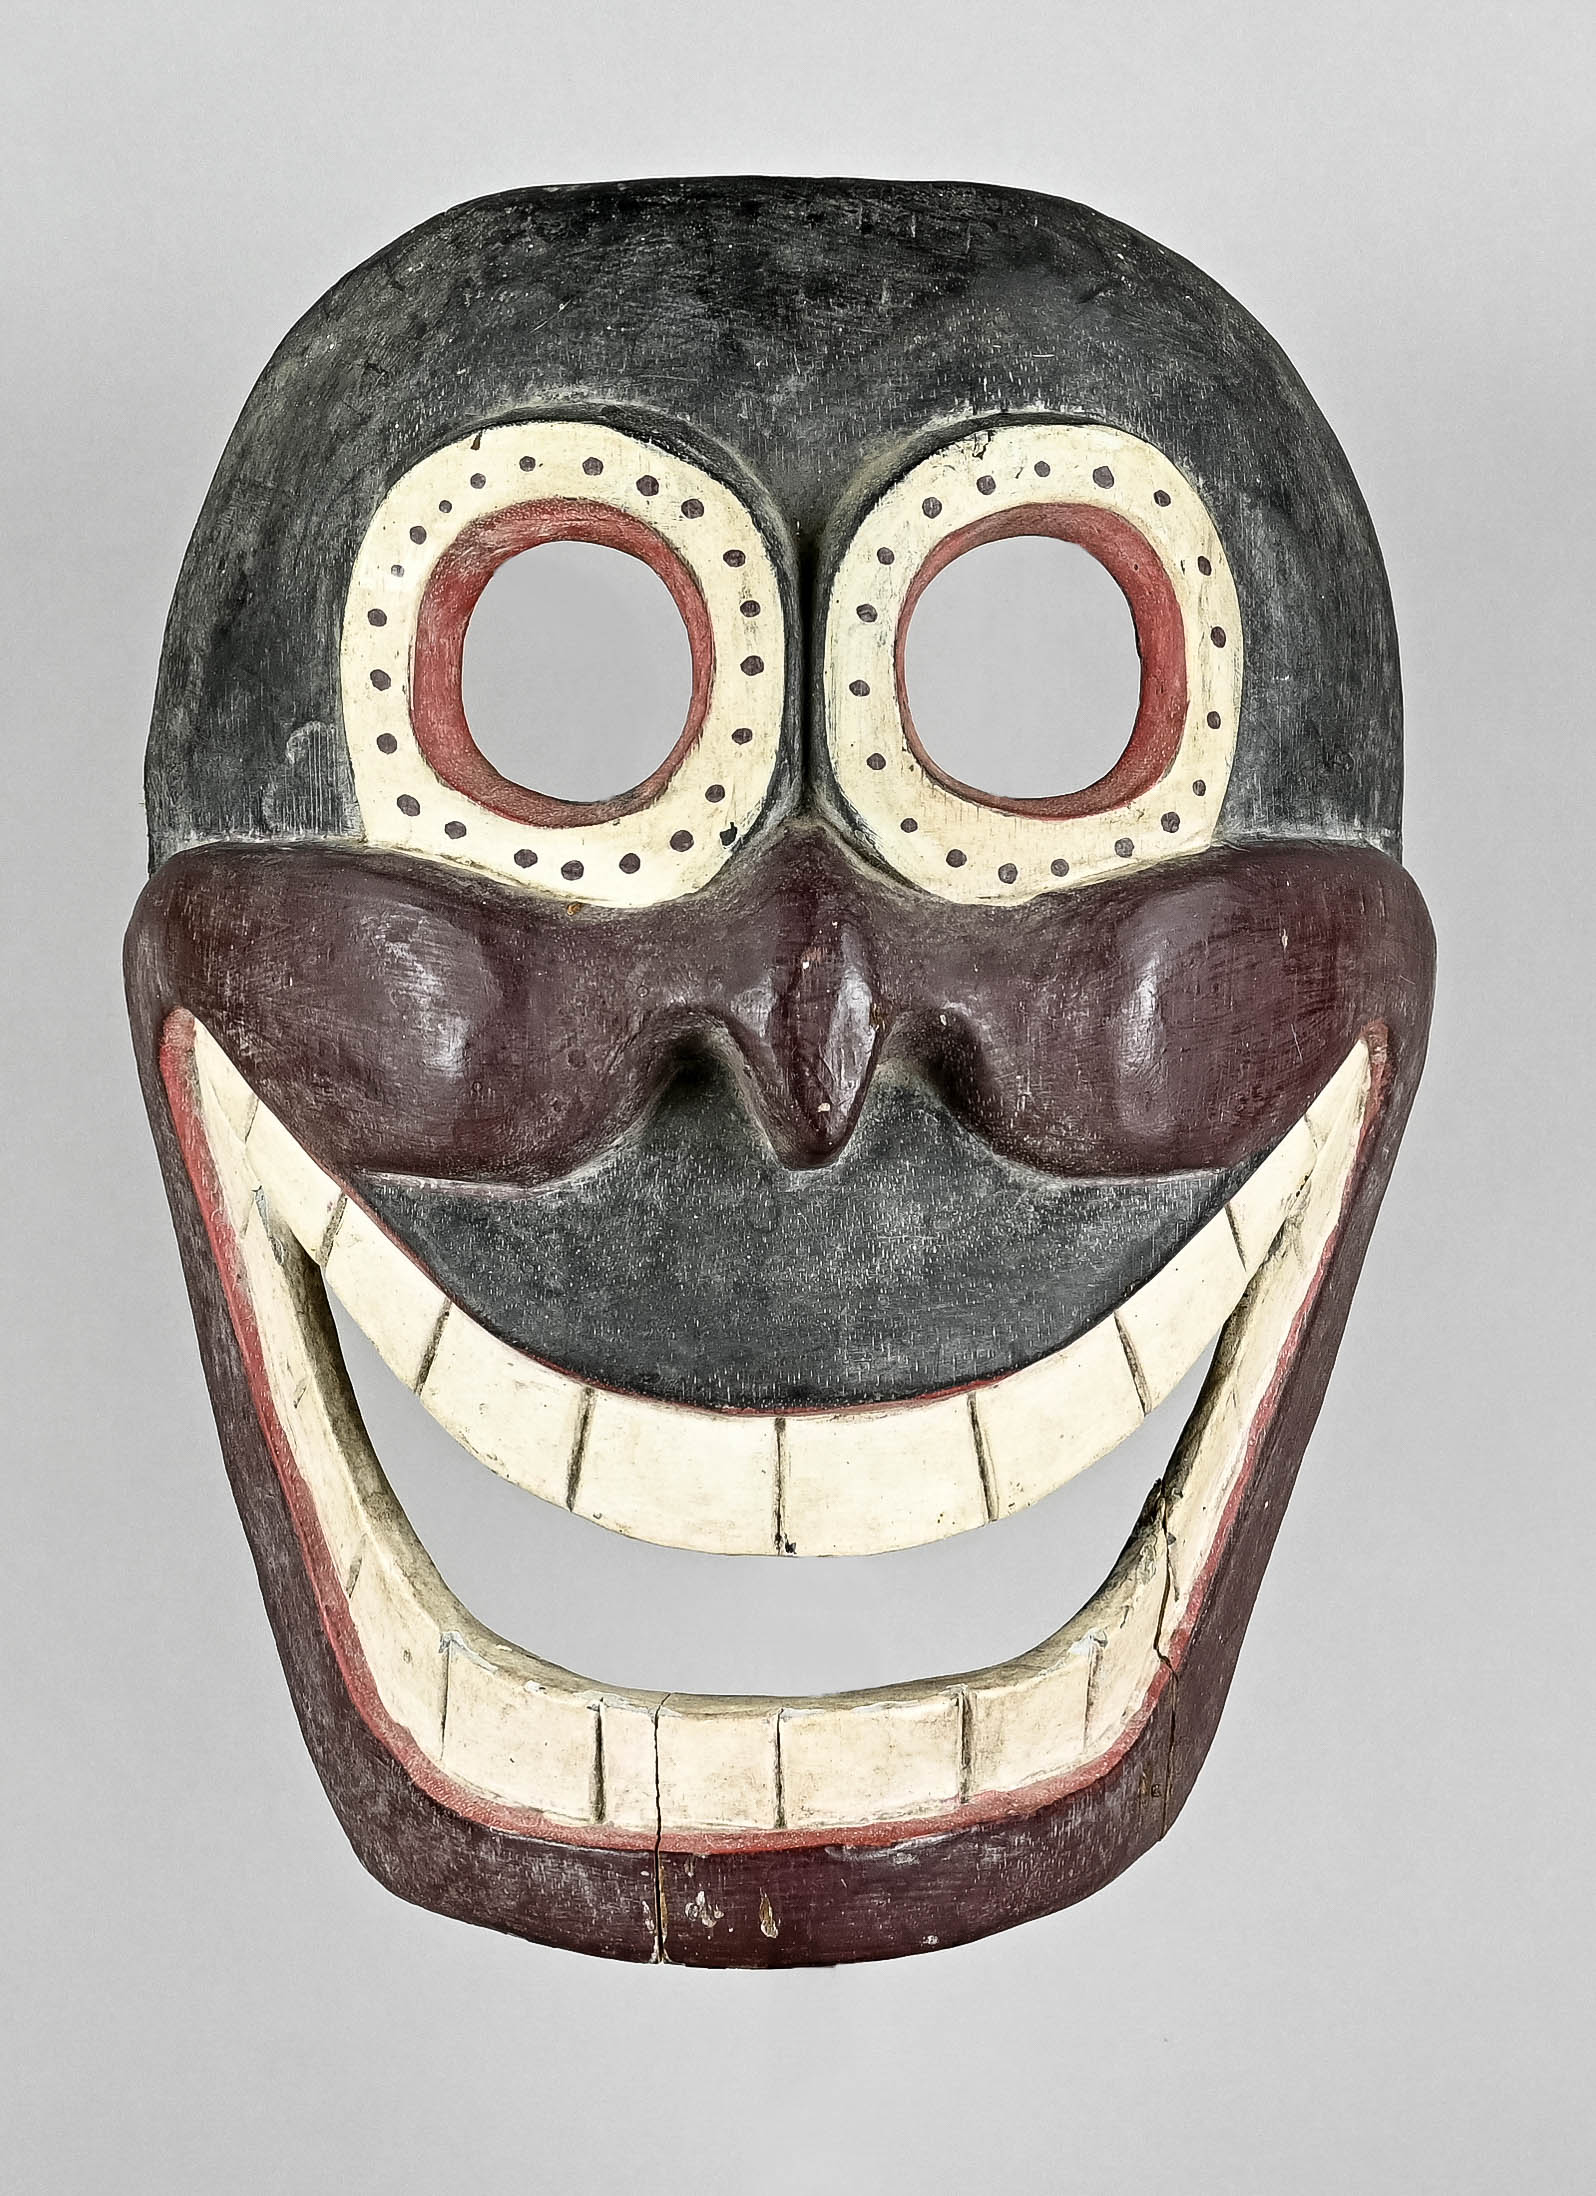 Maske, Afrika, wohl Schamanenmaske mit gewölbten Backen und großem lachenden Mund mit angedeuteten 